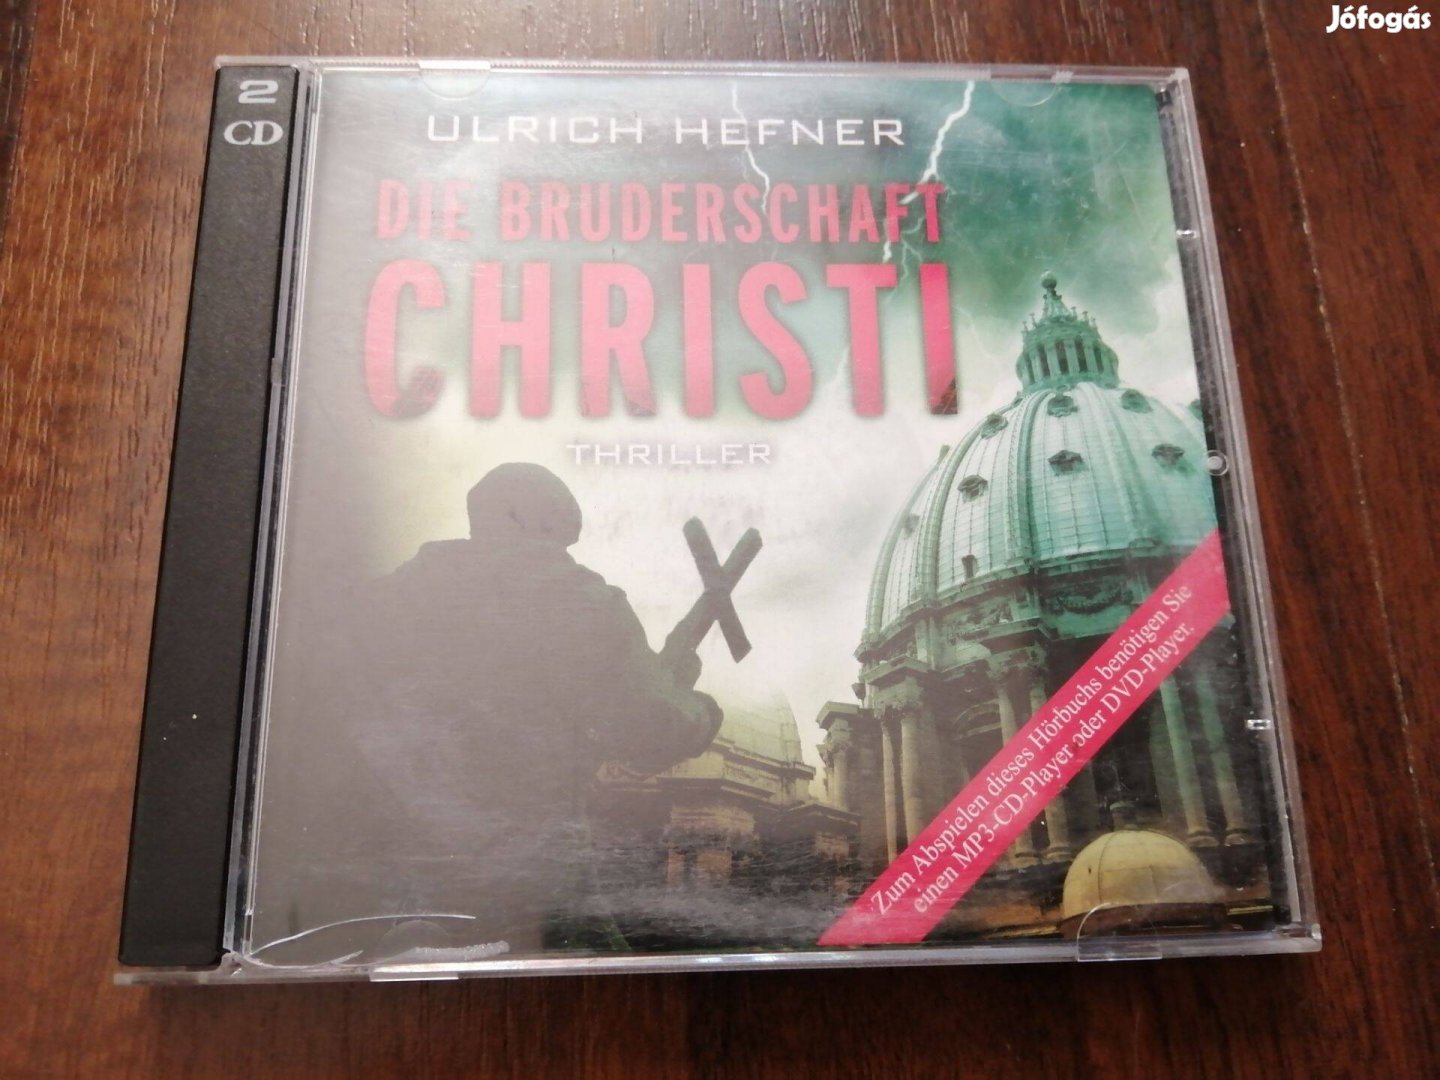 Ulrich Hefner-Die Bruderschaft Christi hangiskönyv CD